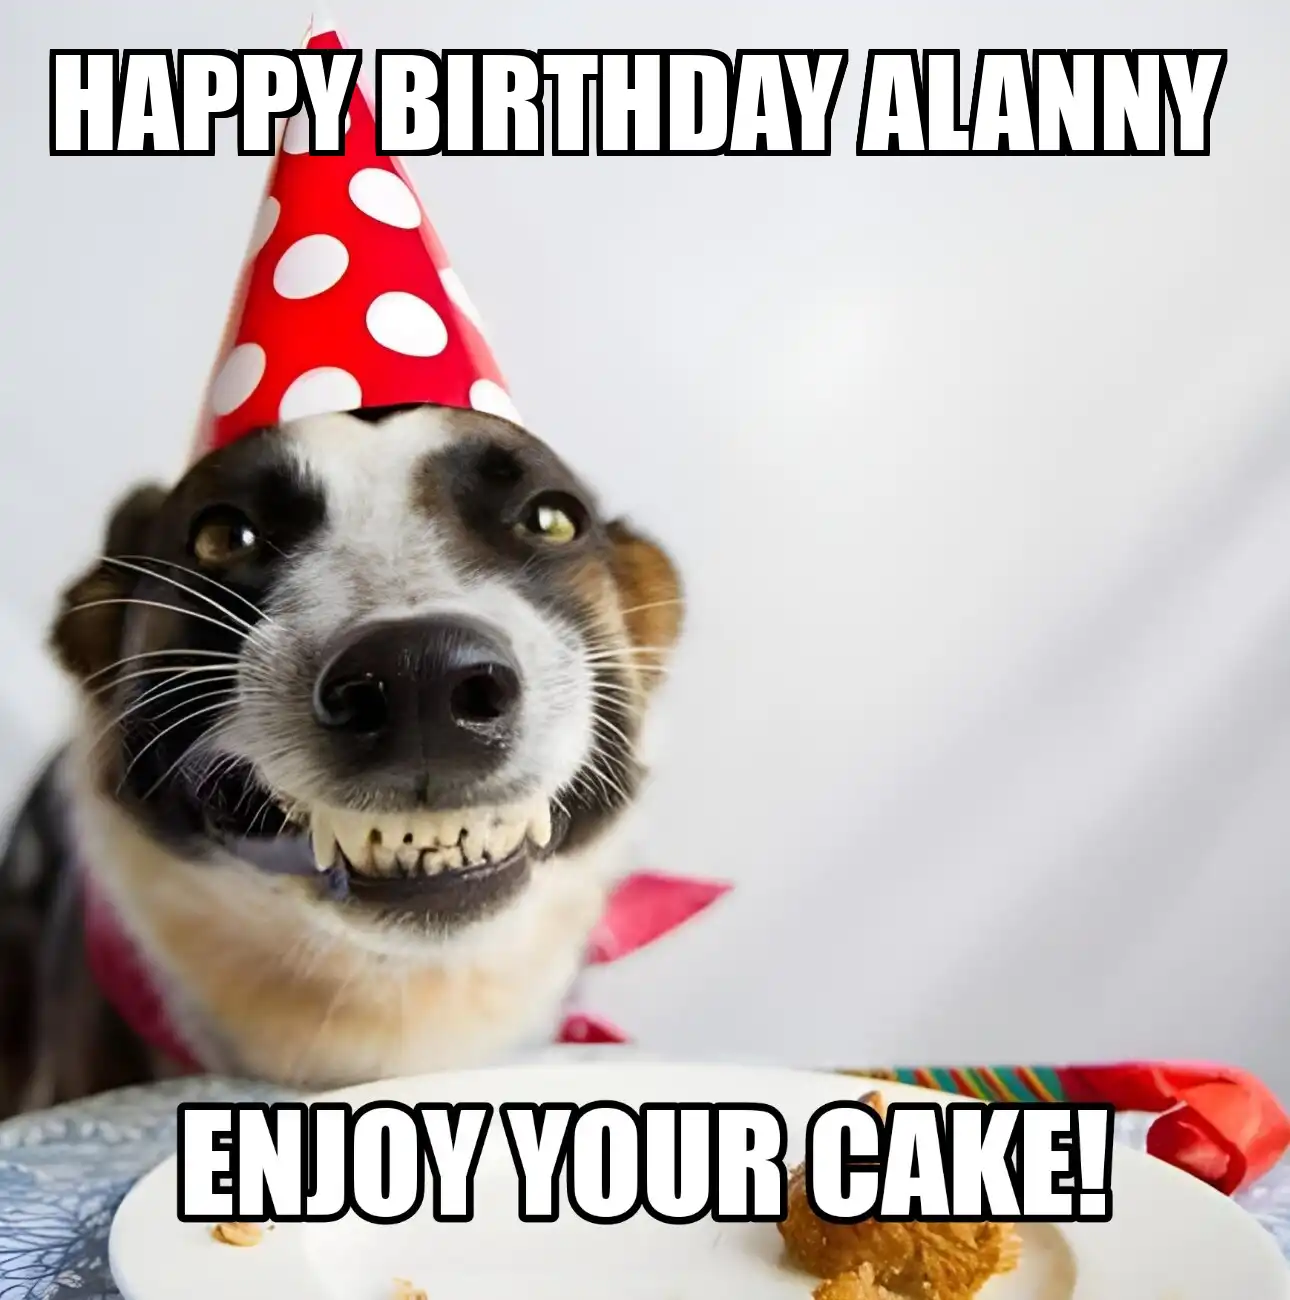 Happy Birthday Alanny Enjoy Your Cake Dog Meme